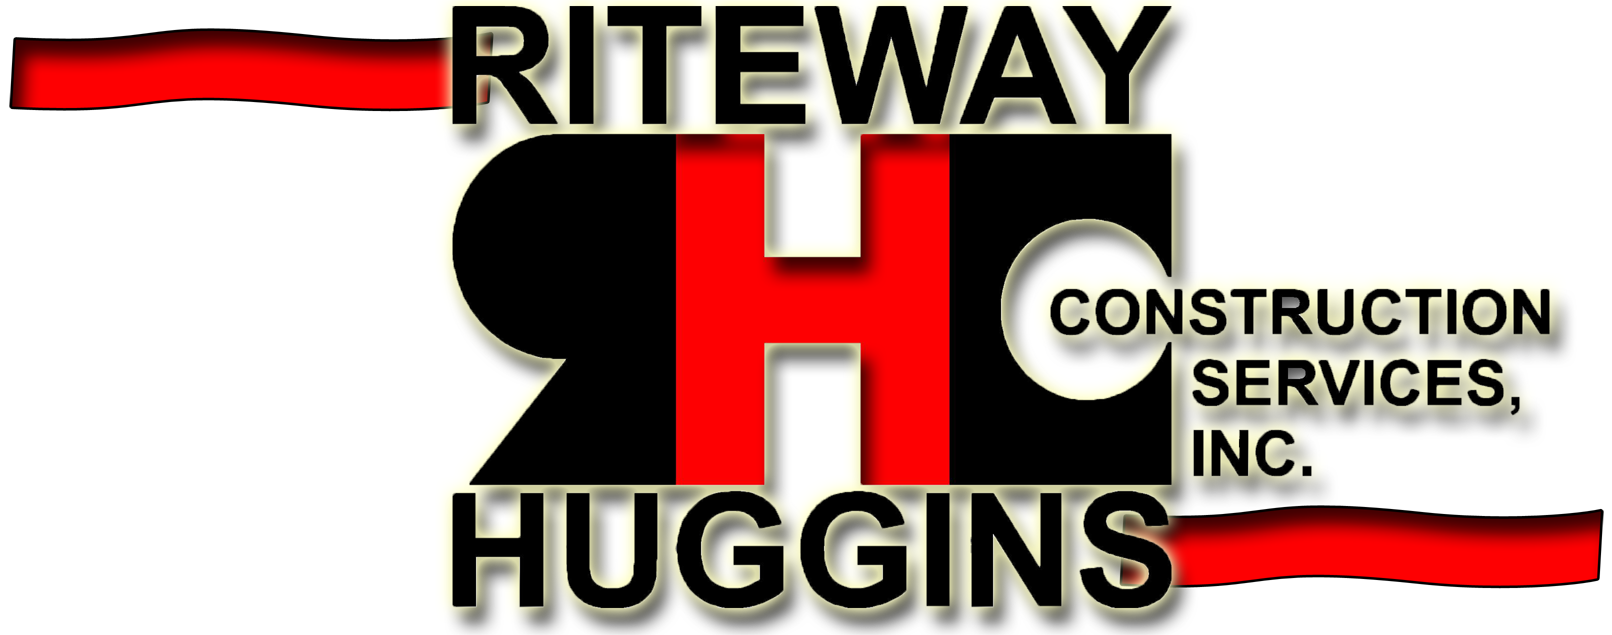 Riteway Huggins2